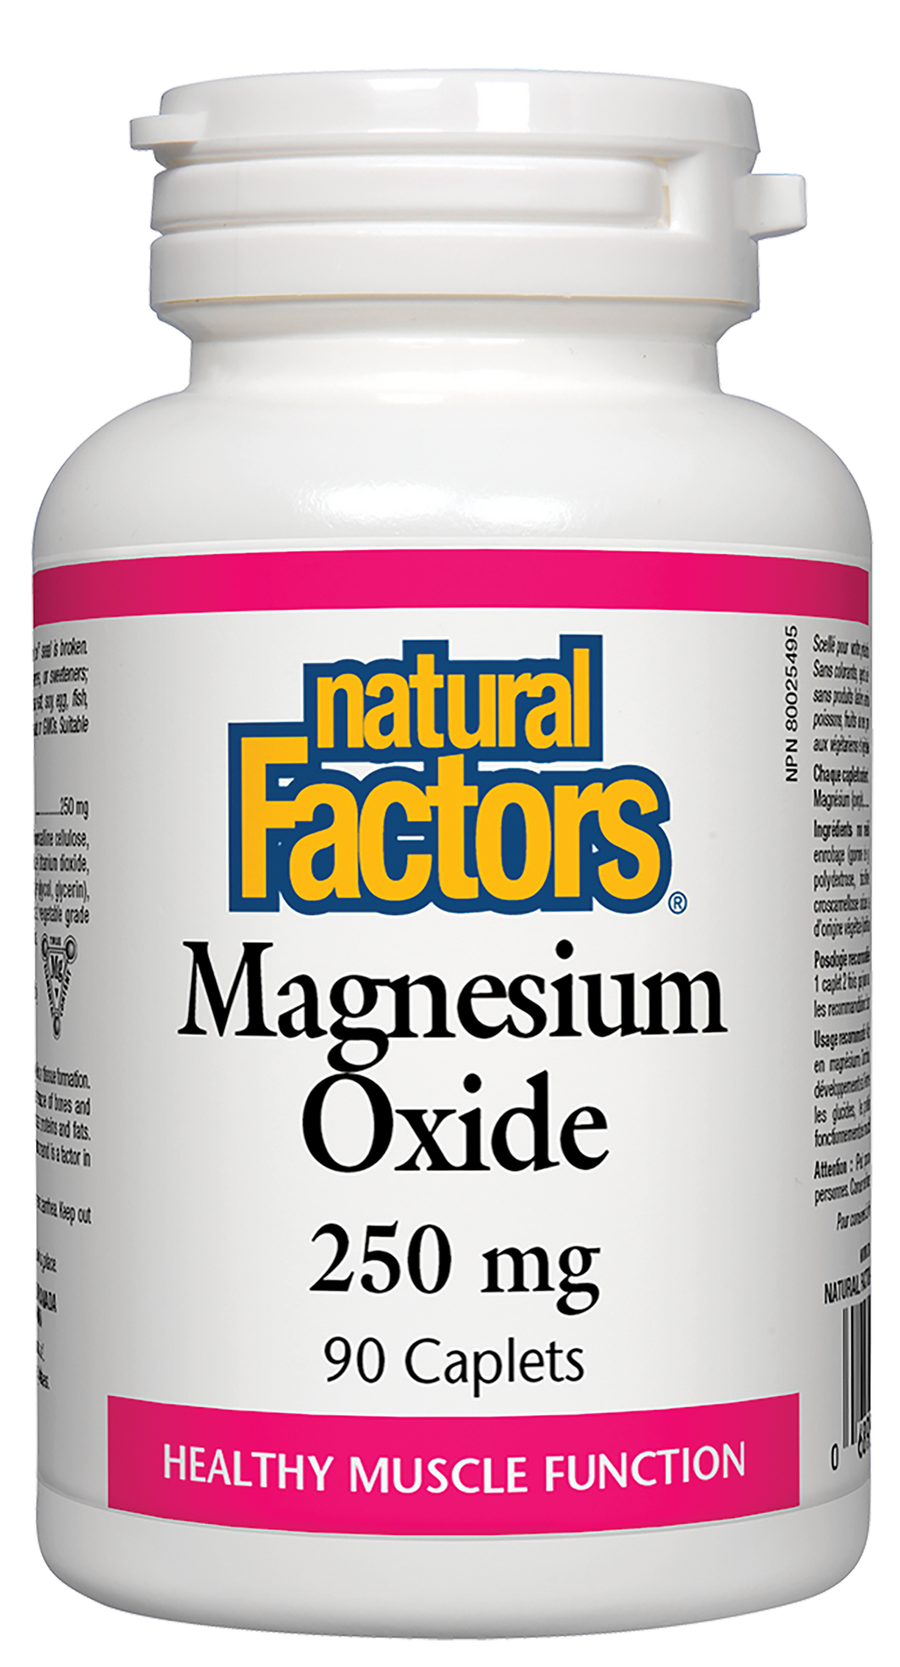 Natural Factors Magnesium Oxide 250 mg 90 Caplets